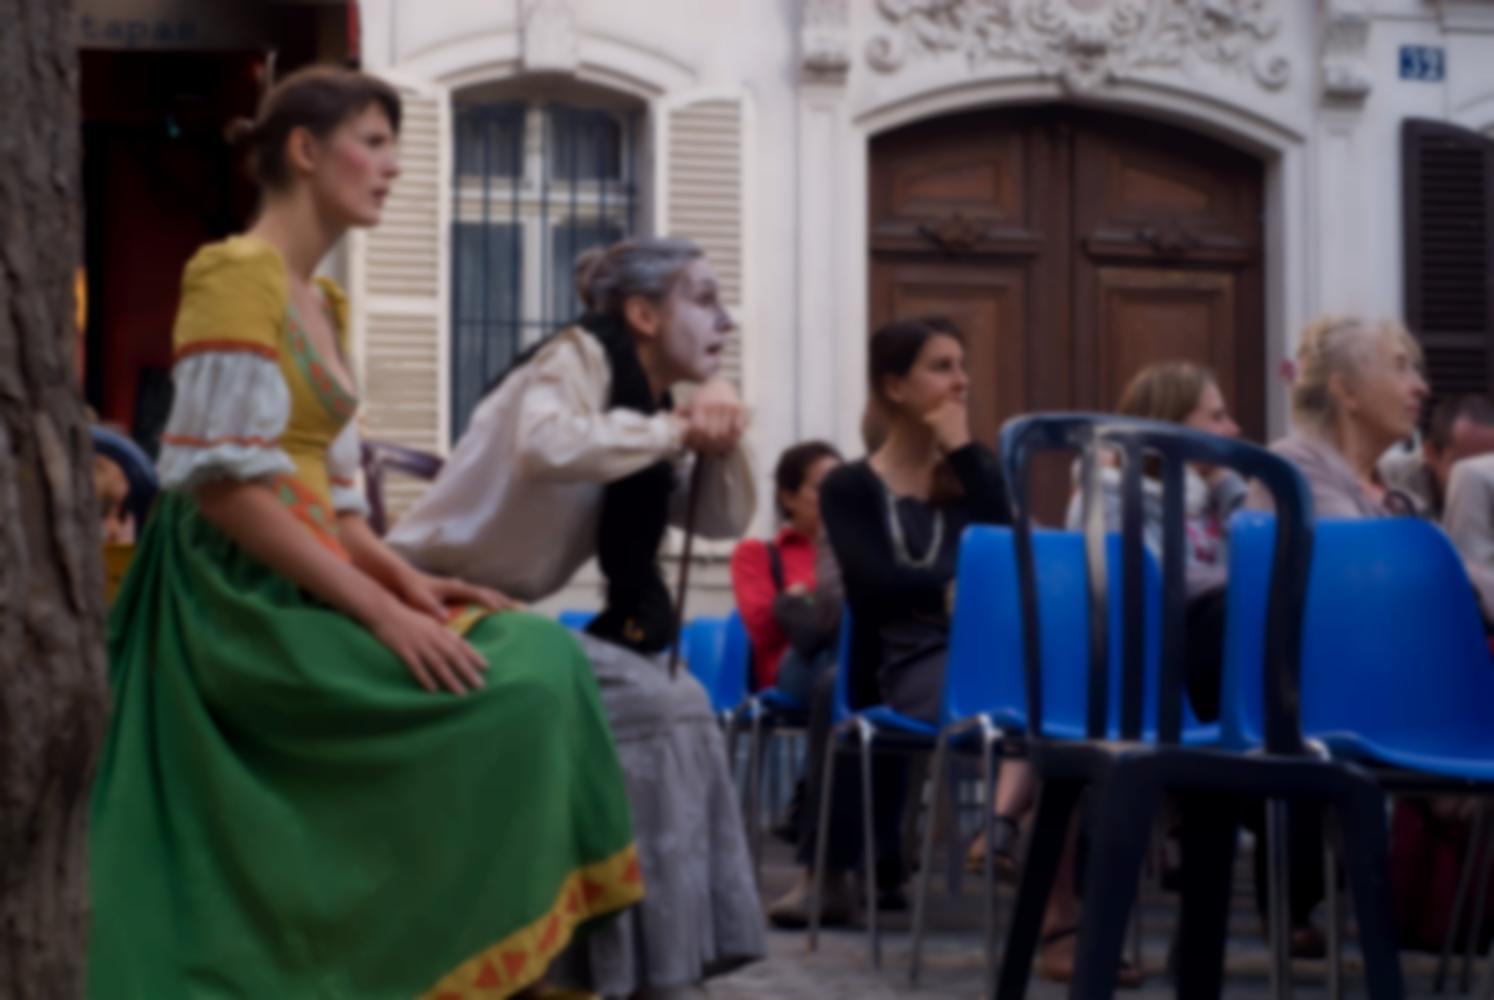 La jeune fille et la vieille femme, assises dans le public, manifestent leur étonnement. Paris, août 2010.